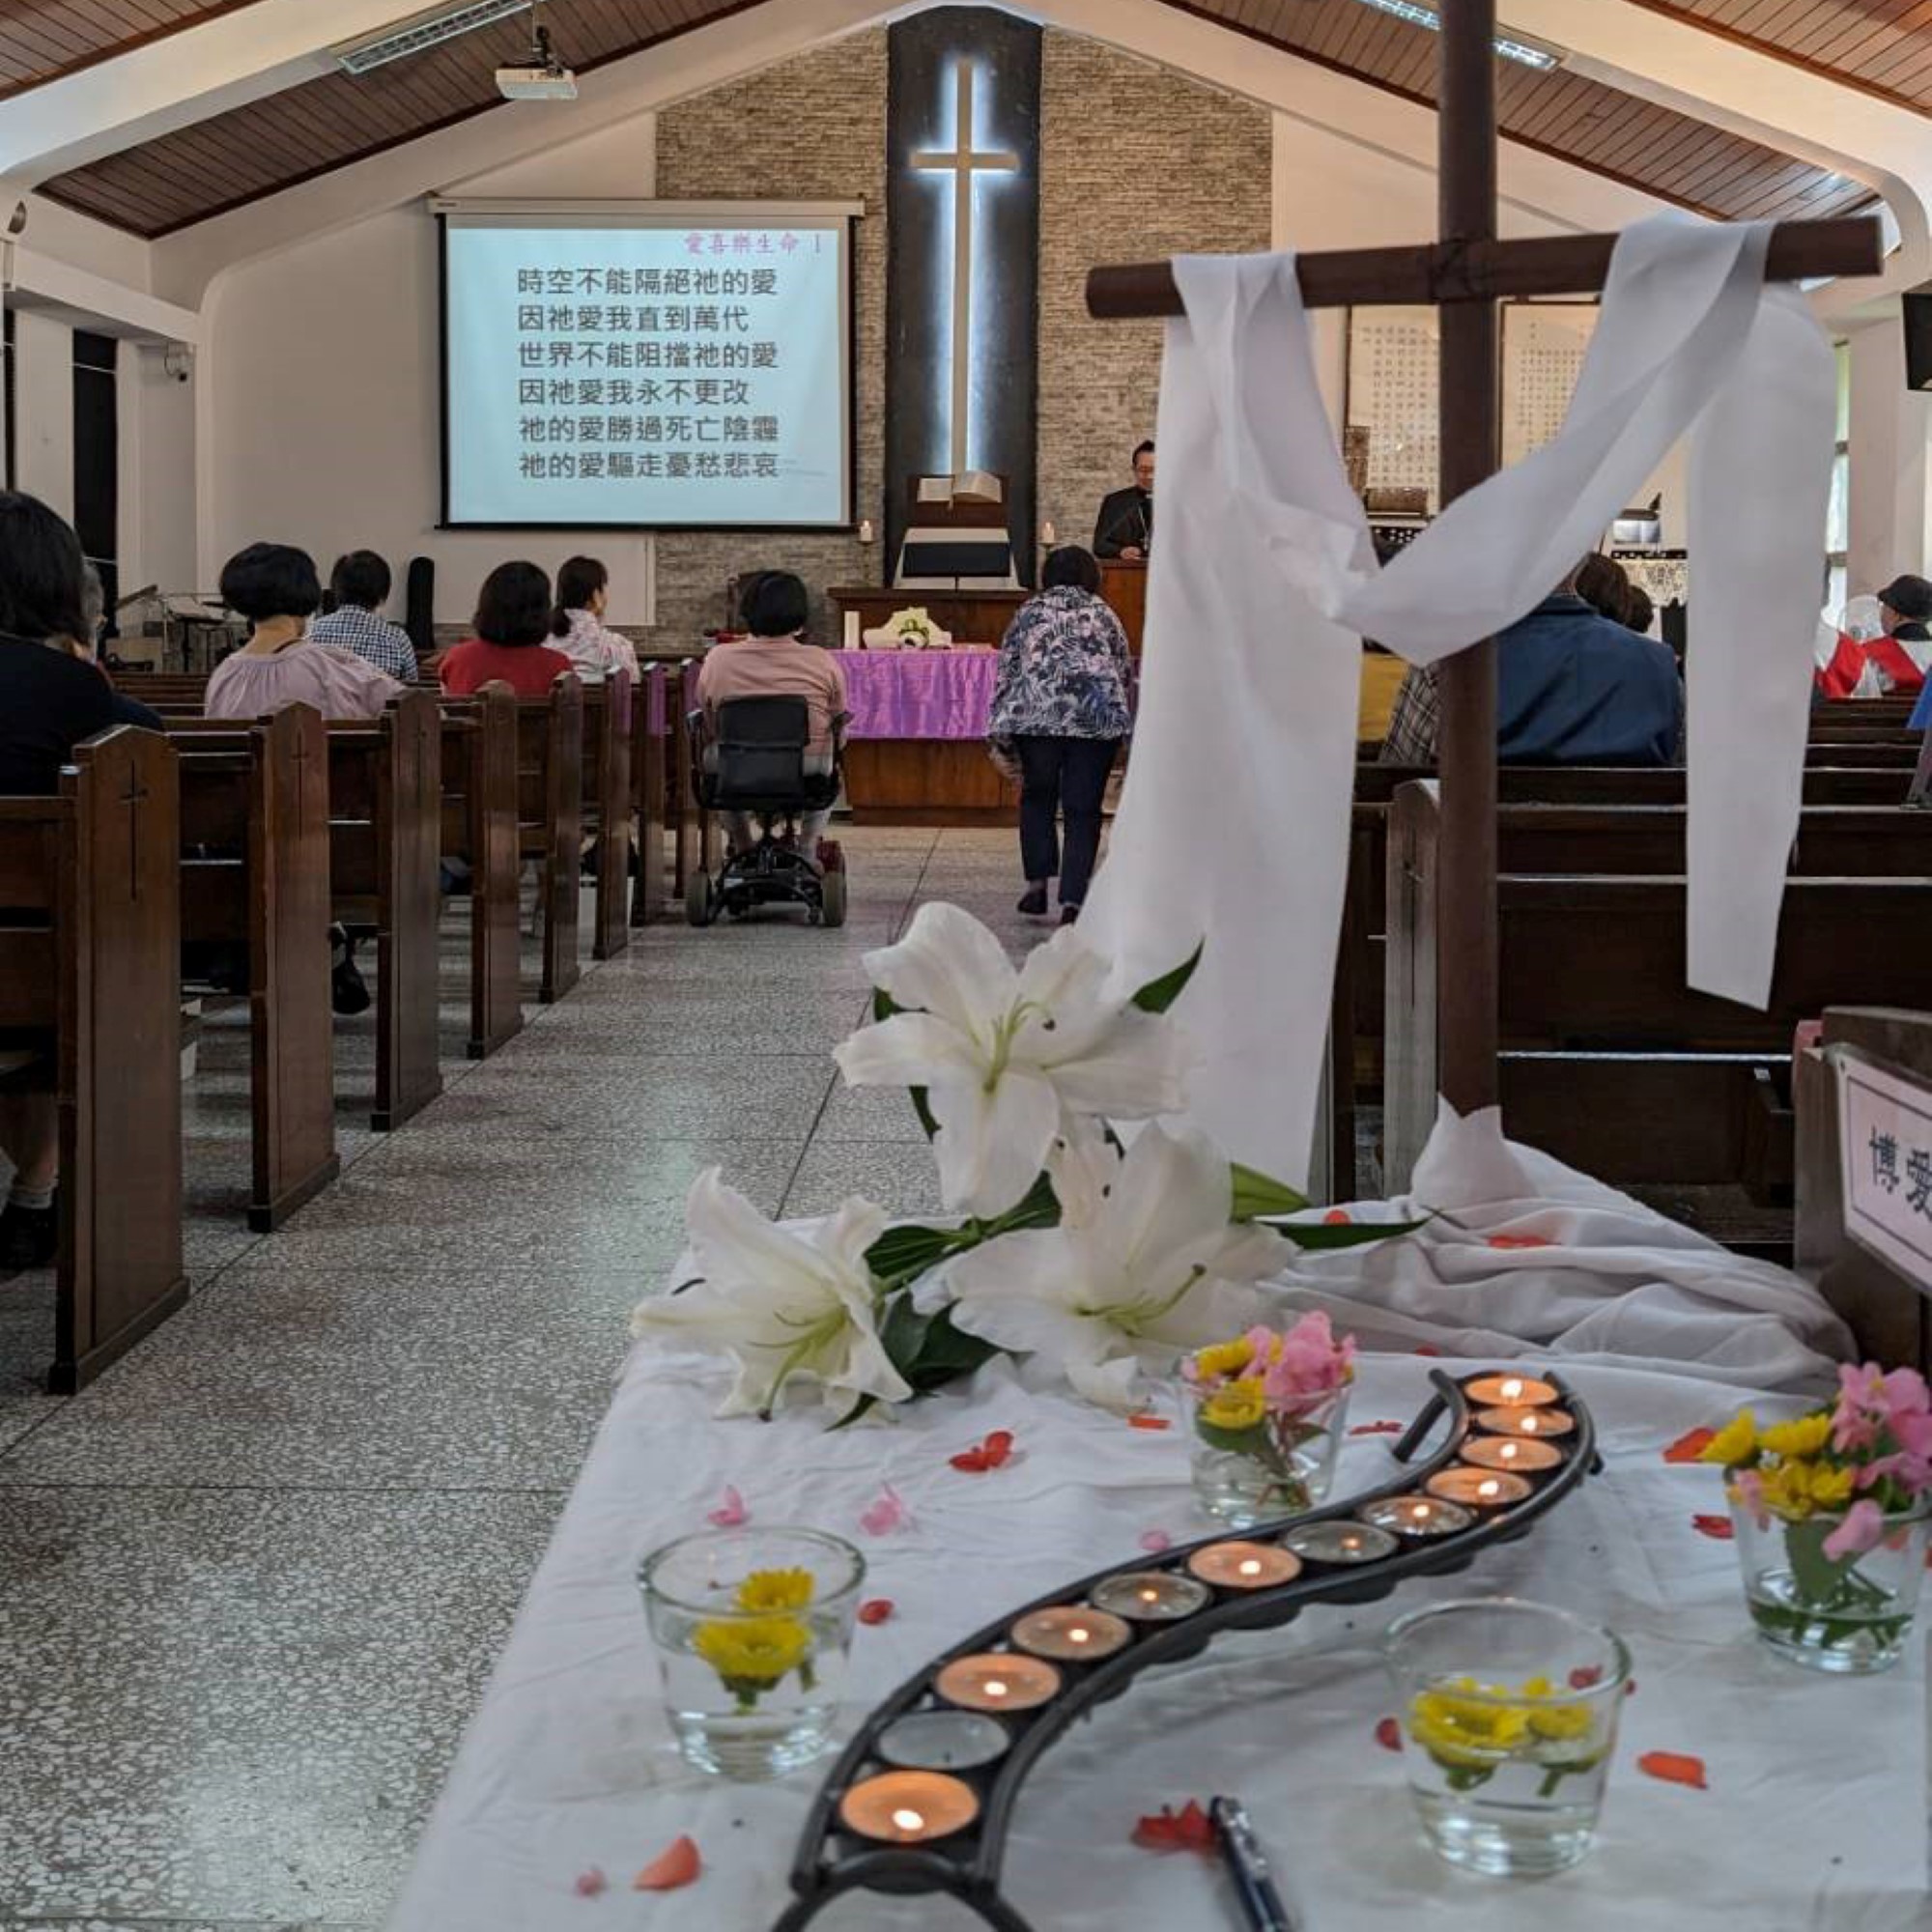 Kirkerommet pyntet med lys, blomster og kors